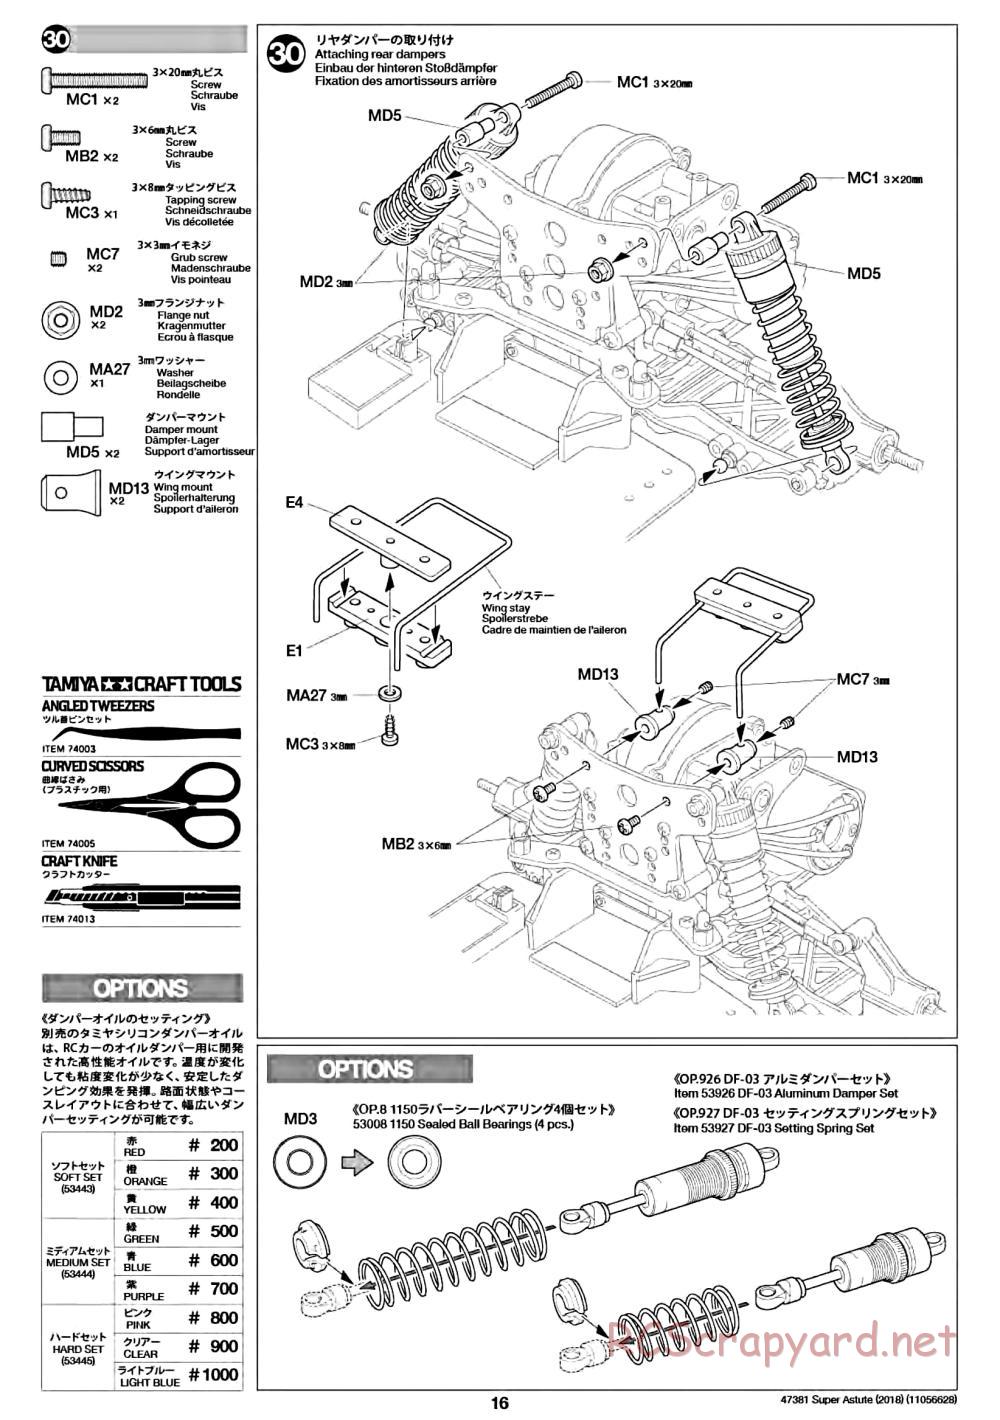 Tamiya - Super Astute (2018) Chassis - Manual - Page 16